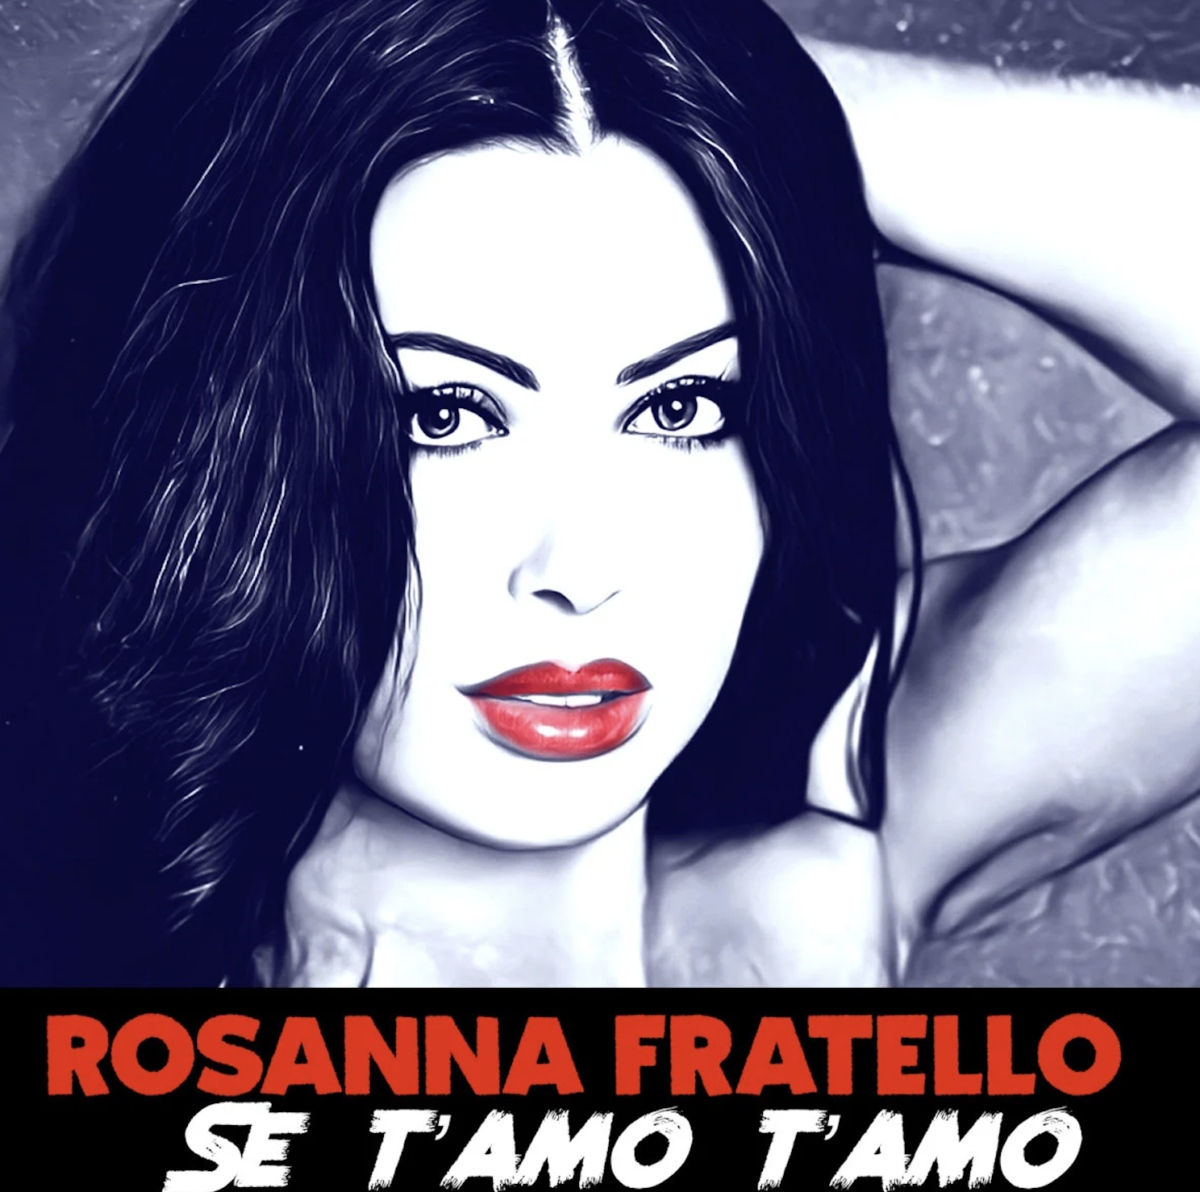 Rosanna Fratello - Se t'amo t'amo - cover